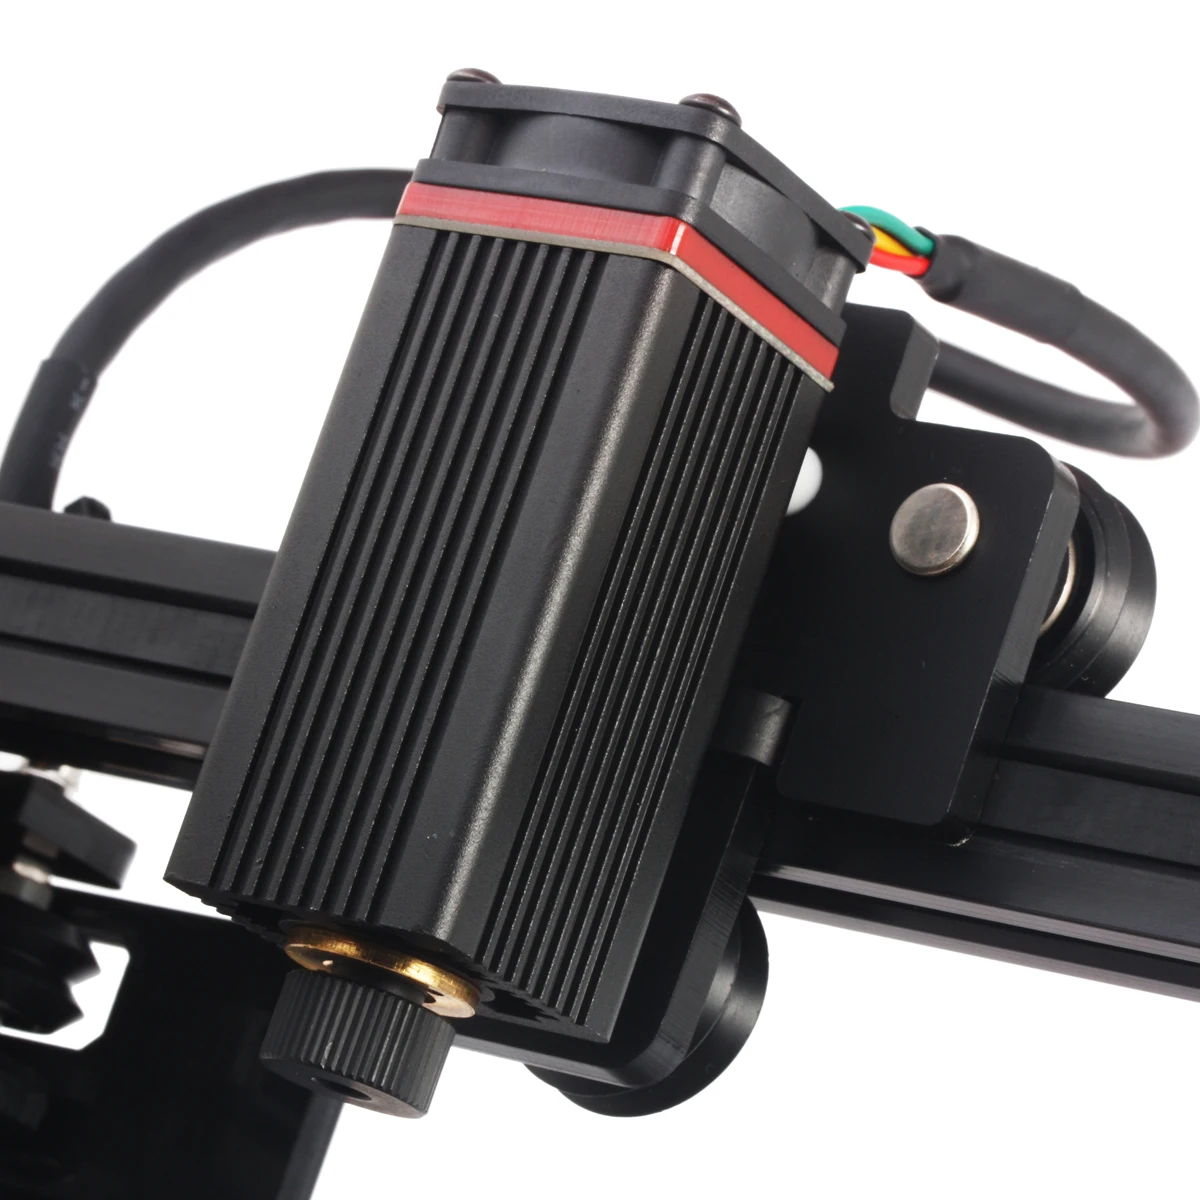 NEJE Master 7 Вт высокоскоростной мини ЧПУ лазерный гравер для гравировки по металлу резьба машина лазерная резка, гравировальный станок